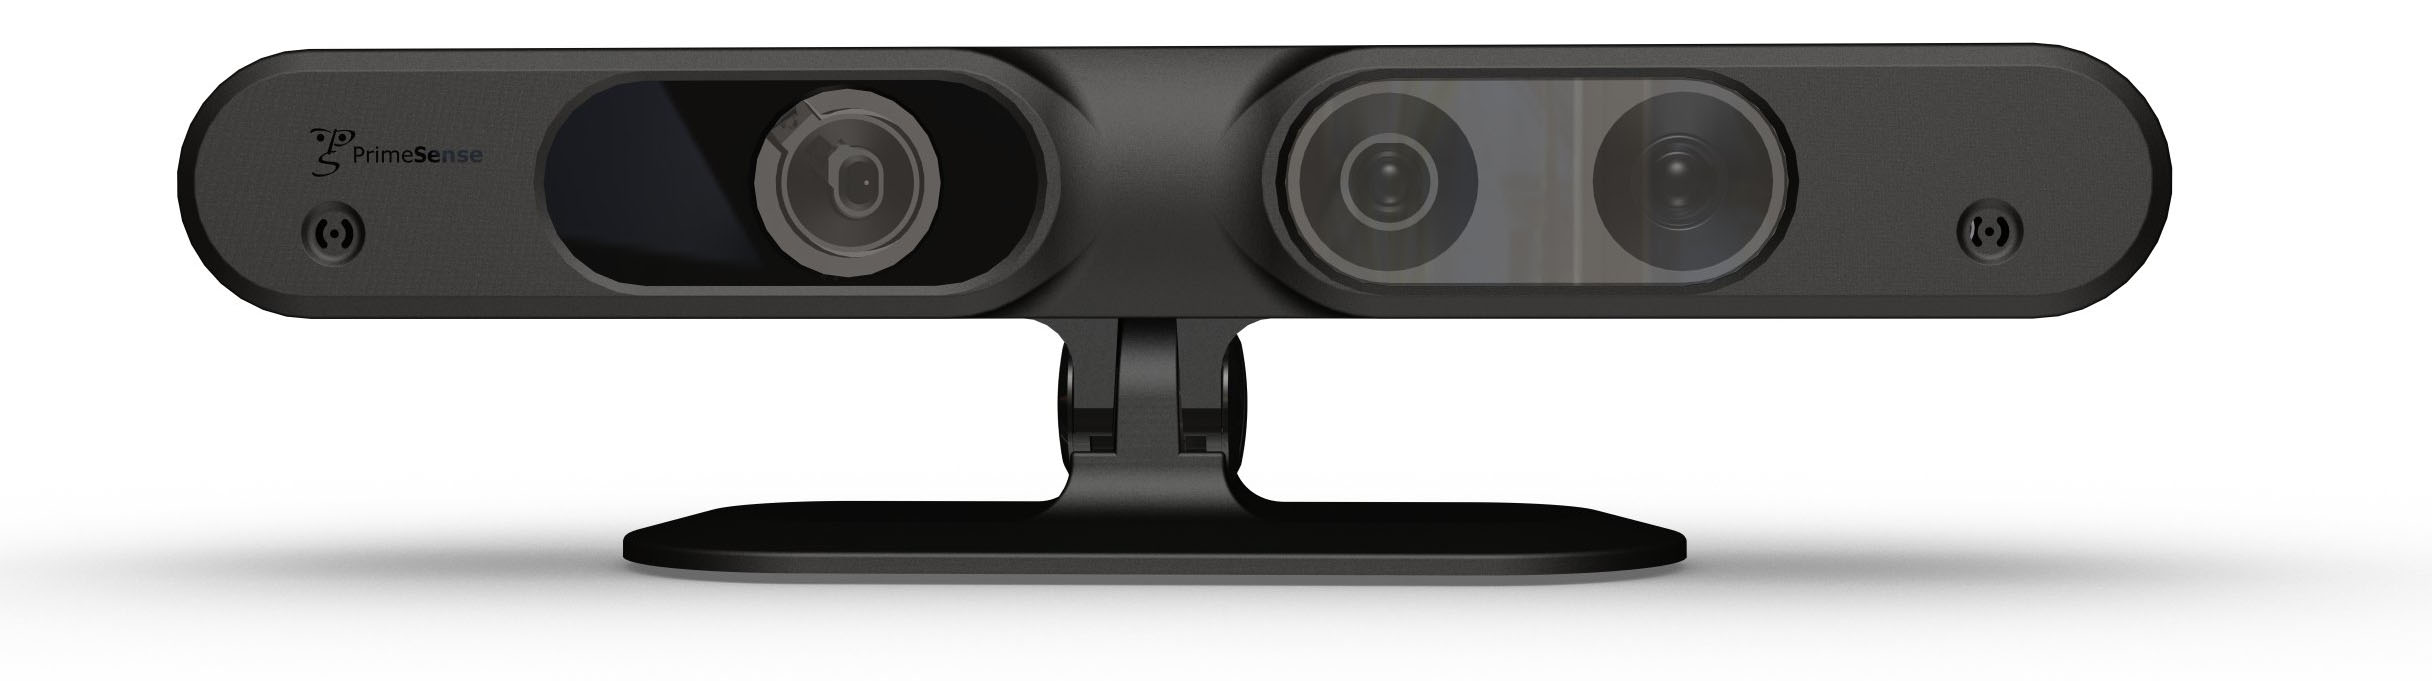 PrimeSense motion senser | Kinect | Apple เผยเข้าซื้อกิจการบริษัท PrimeSense ผู้พัฒนาเทคโนโลยีเบื้องหลังระบบ Kinect ของ XBOX จริง หรือเราจะได้เห็นระบบจับความเคลื่อนไหวในอุปกรณ์ Apple เร็วๆนี้